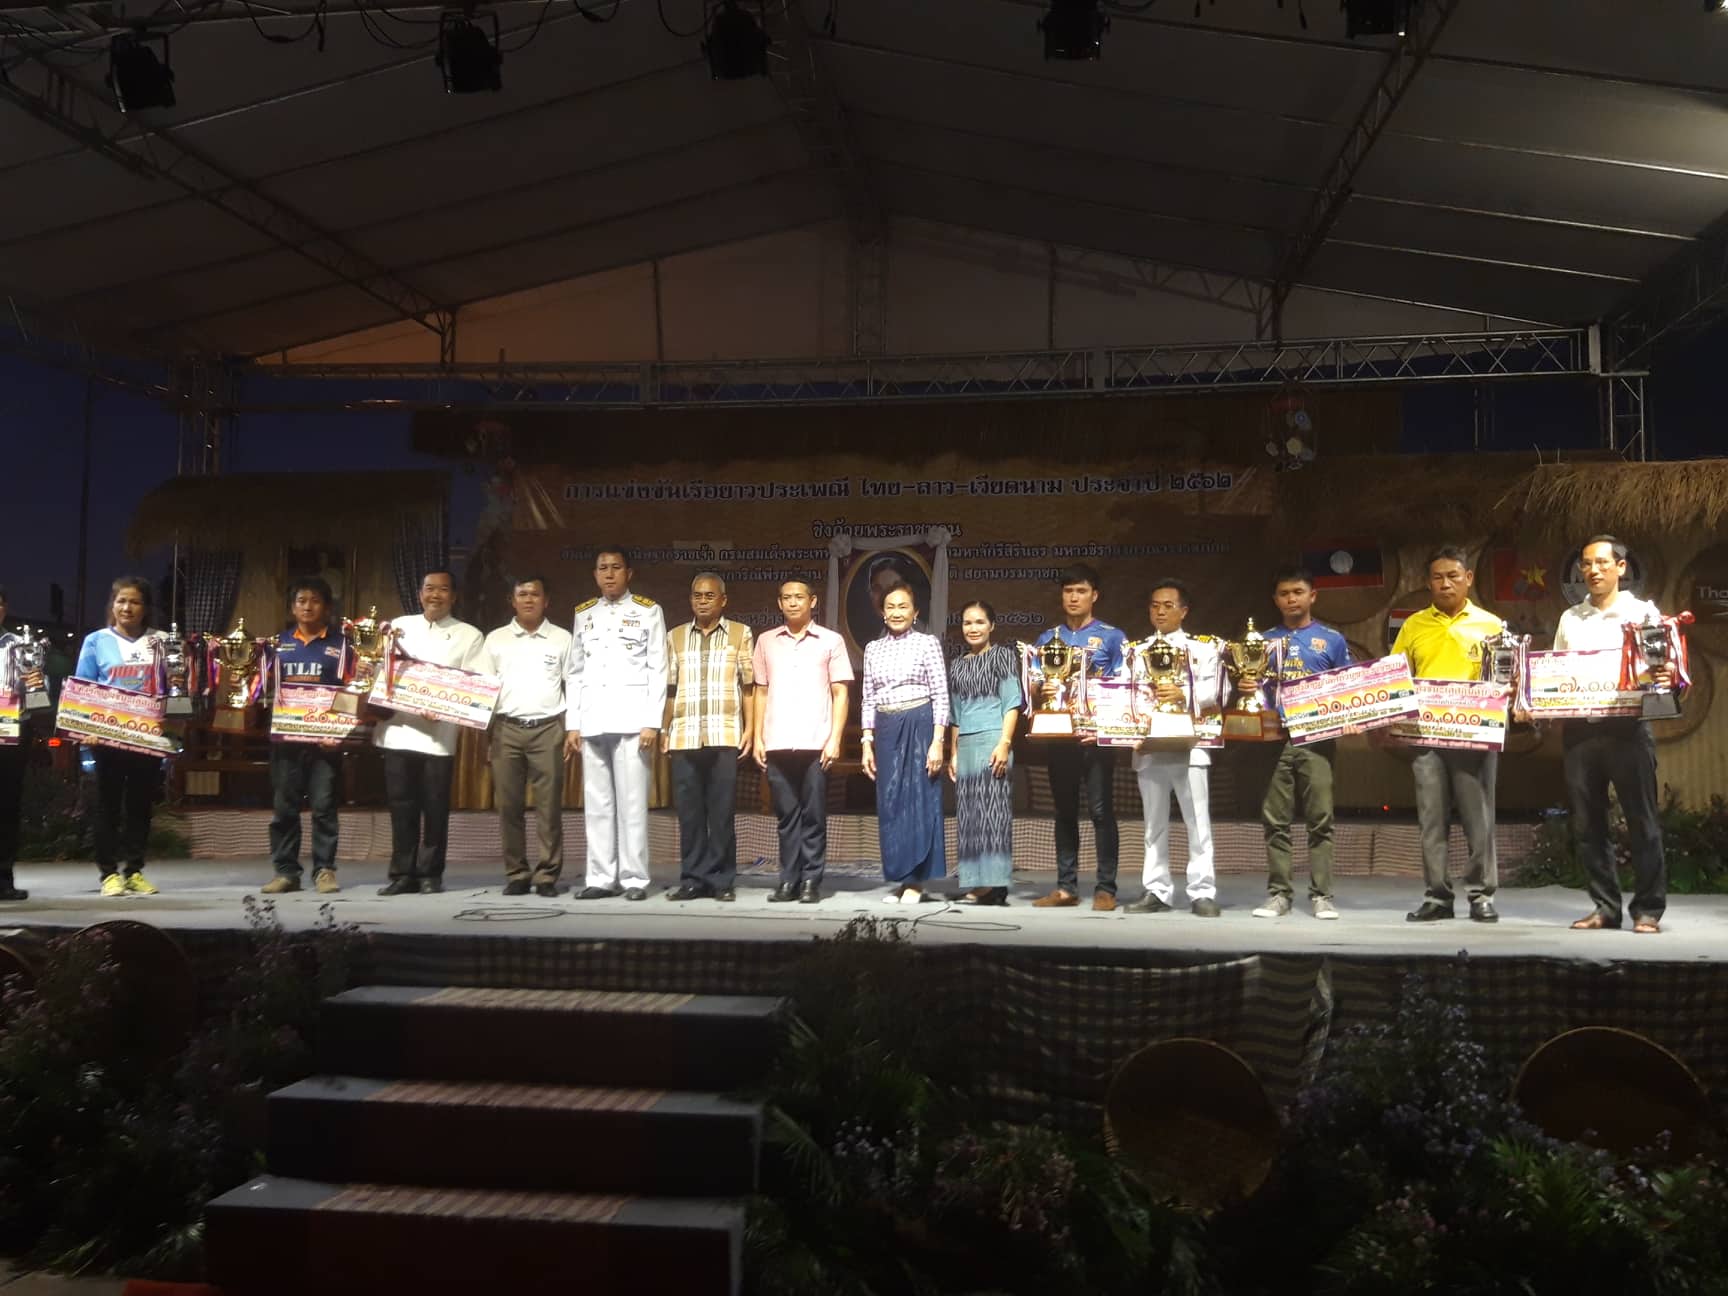 Ban tổ chức trao giải cho các đội đua thuyền đạt thành tích cao tại giải. (Đại diện đội đua tỉnh Quảng Bình ngoài cùng bên phải).